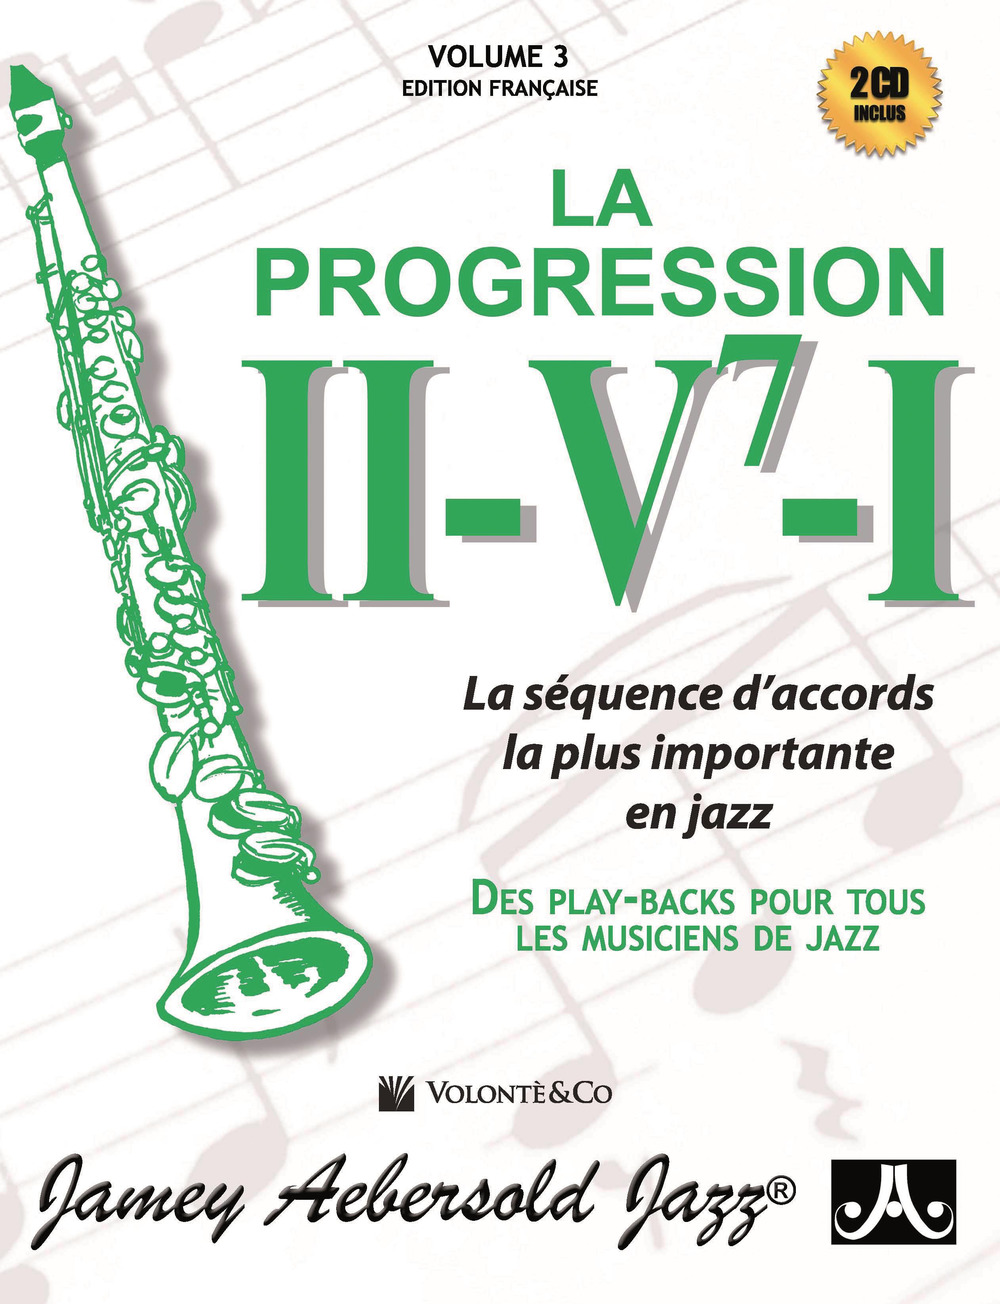 La progressione II-V7-I. La séquence d'accords la plus importante en jazz. Des play-backs pur tous les musiciens de jazz. Con 2 CD-Audio